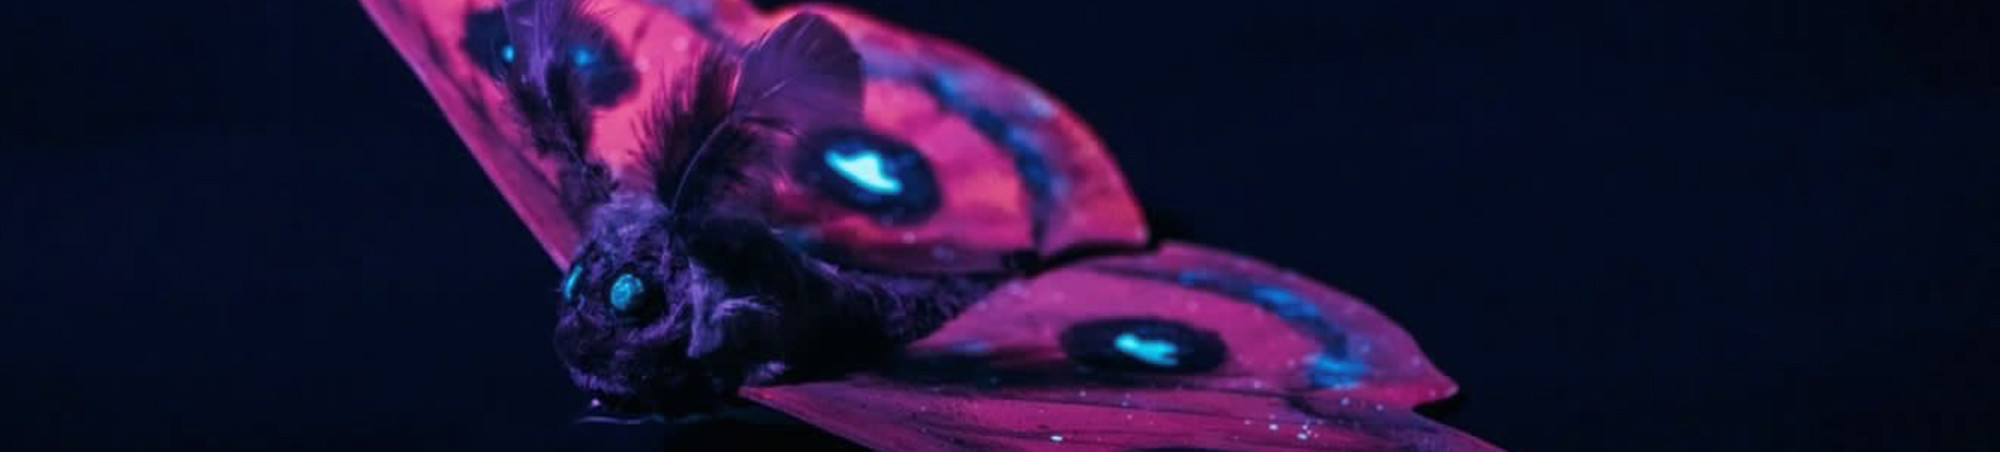 Überlebensgroßes Modell vom Nagelfleck im Dunkeln aufgenommen, prächtige, fluoreszierende Farbigkeit